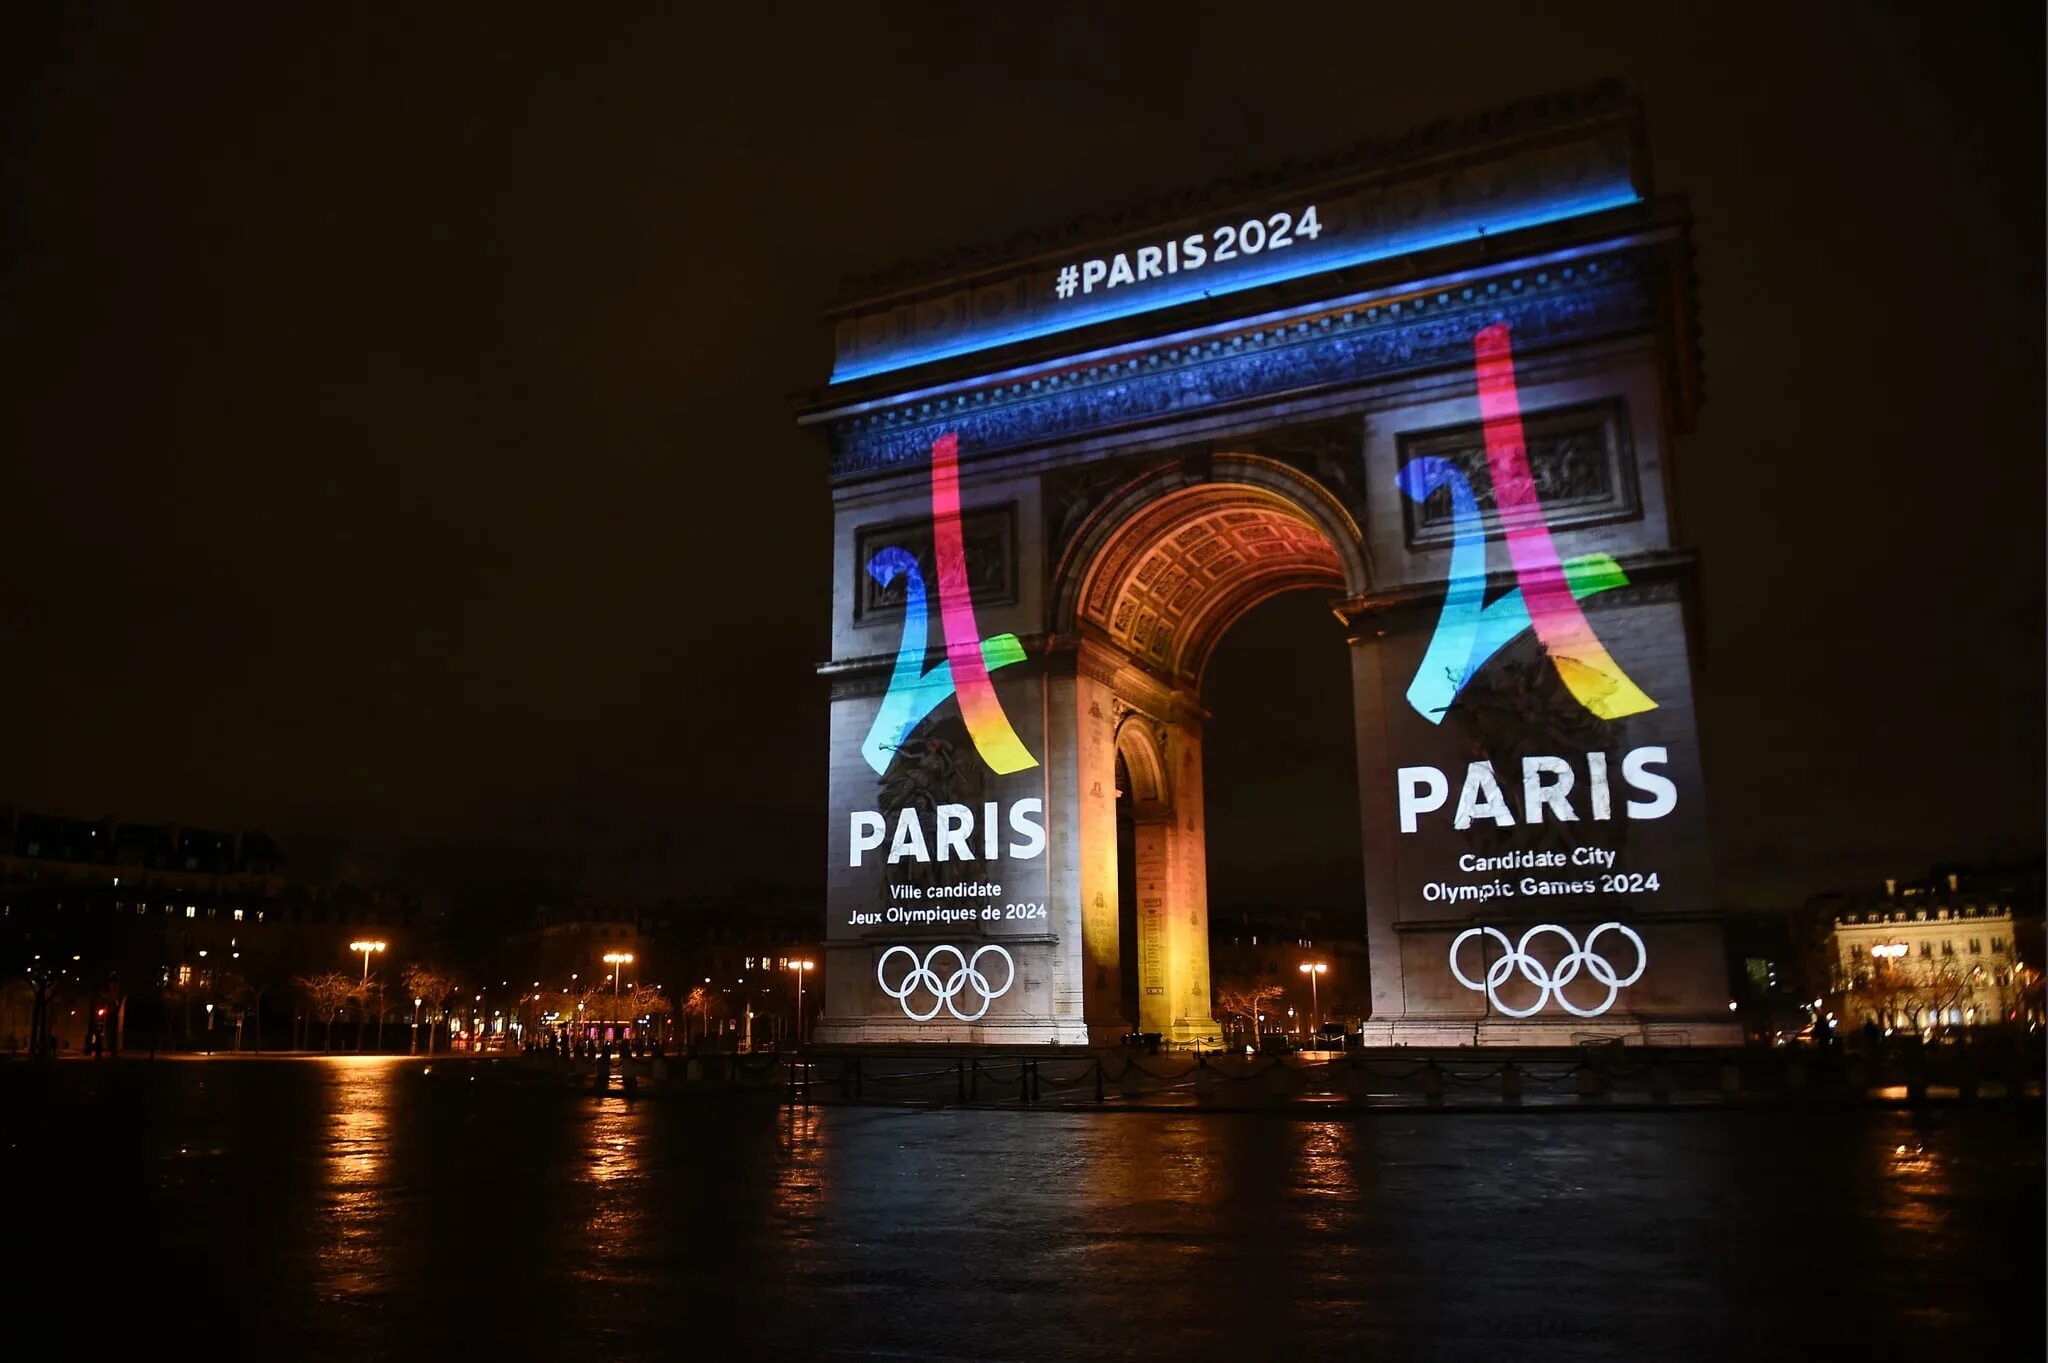 Since 2024. Олимпийские игры в Париже 2024. Олимпийских игр–2024 в Париже лого. Париж 2024 логотип.